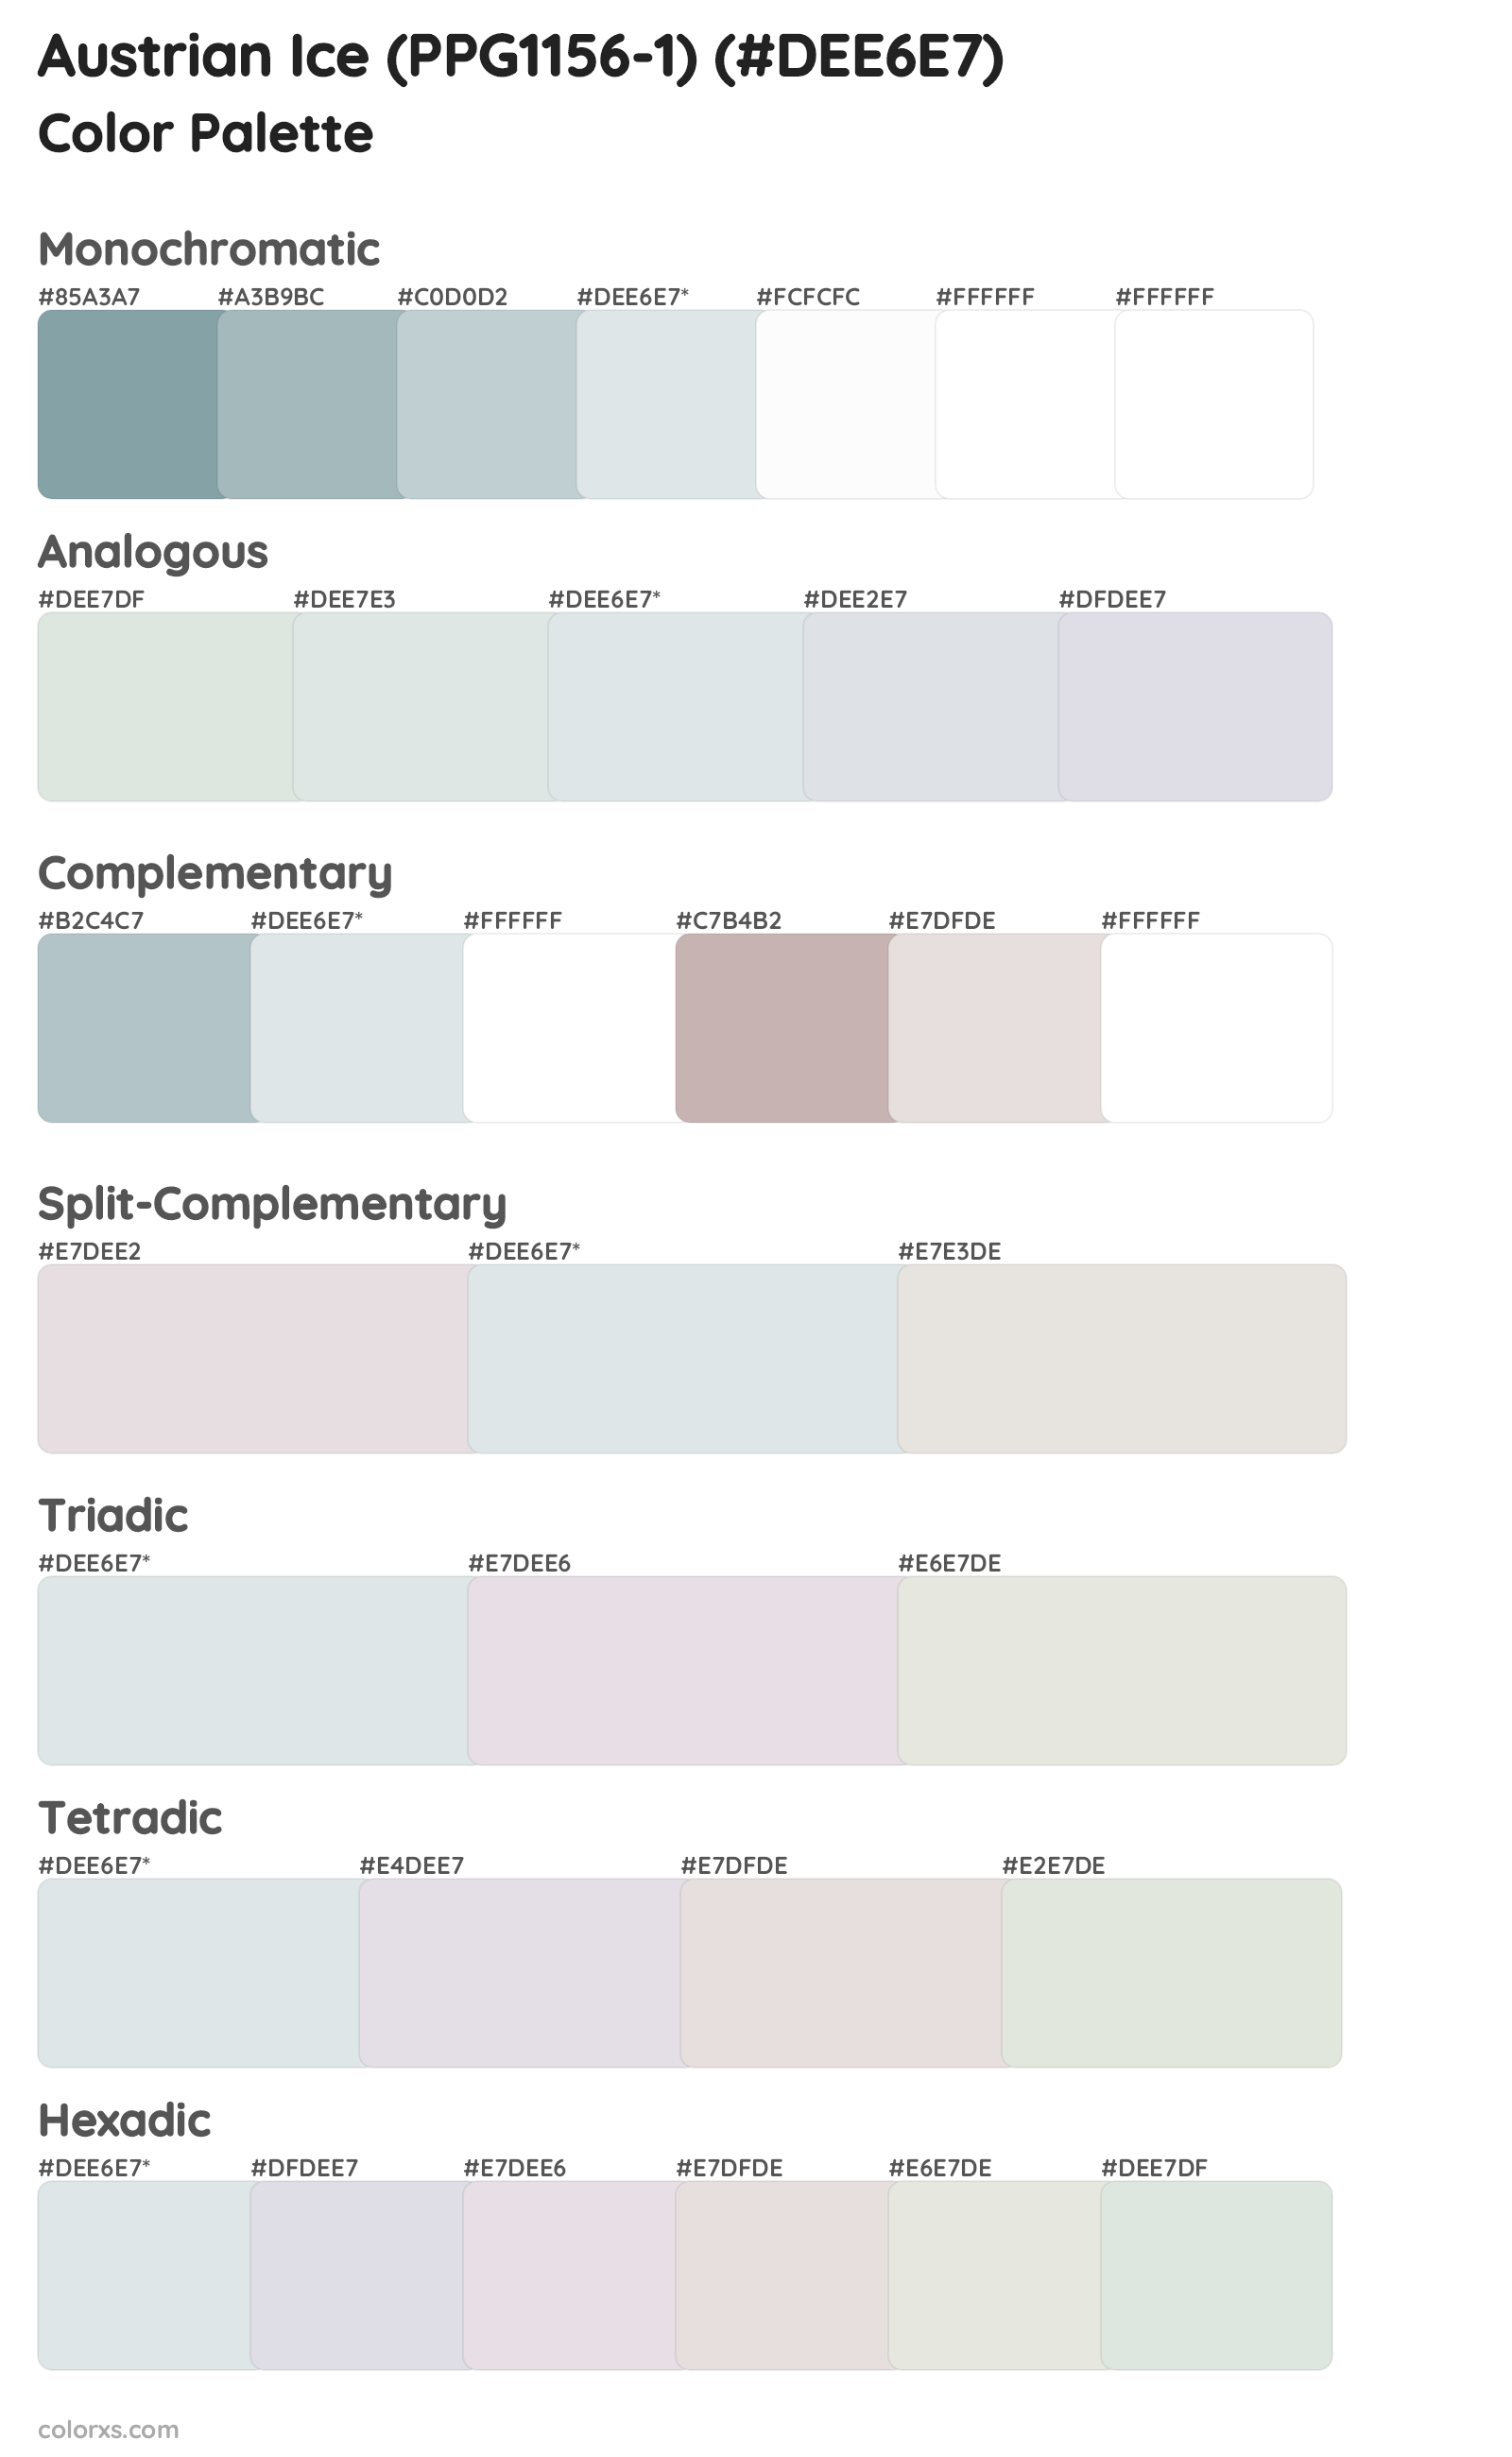 Austrian Ice (PPG1156-1) Color Scheme Palettes